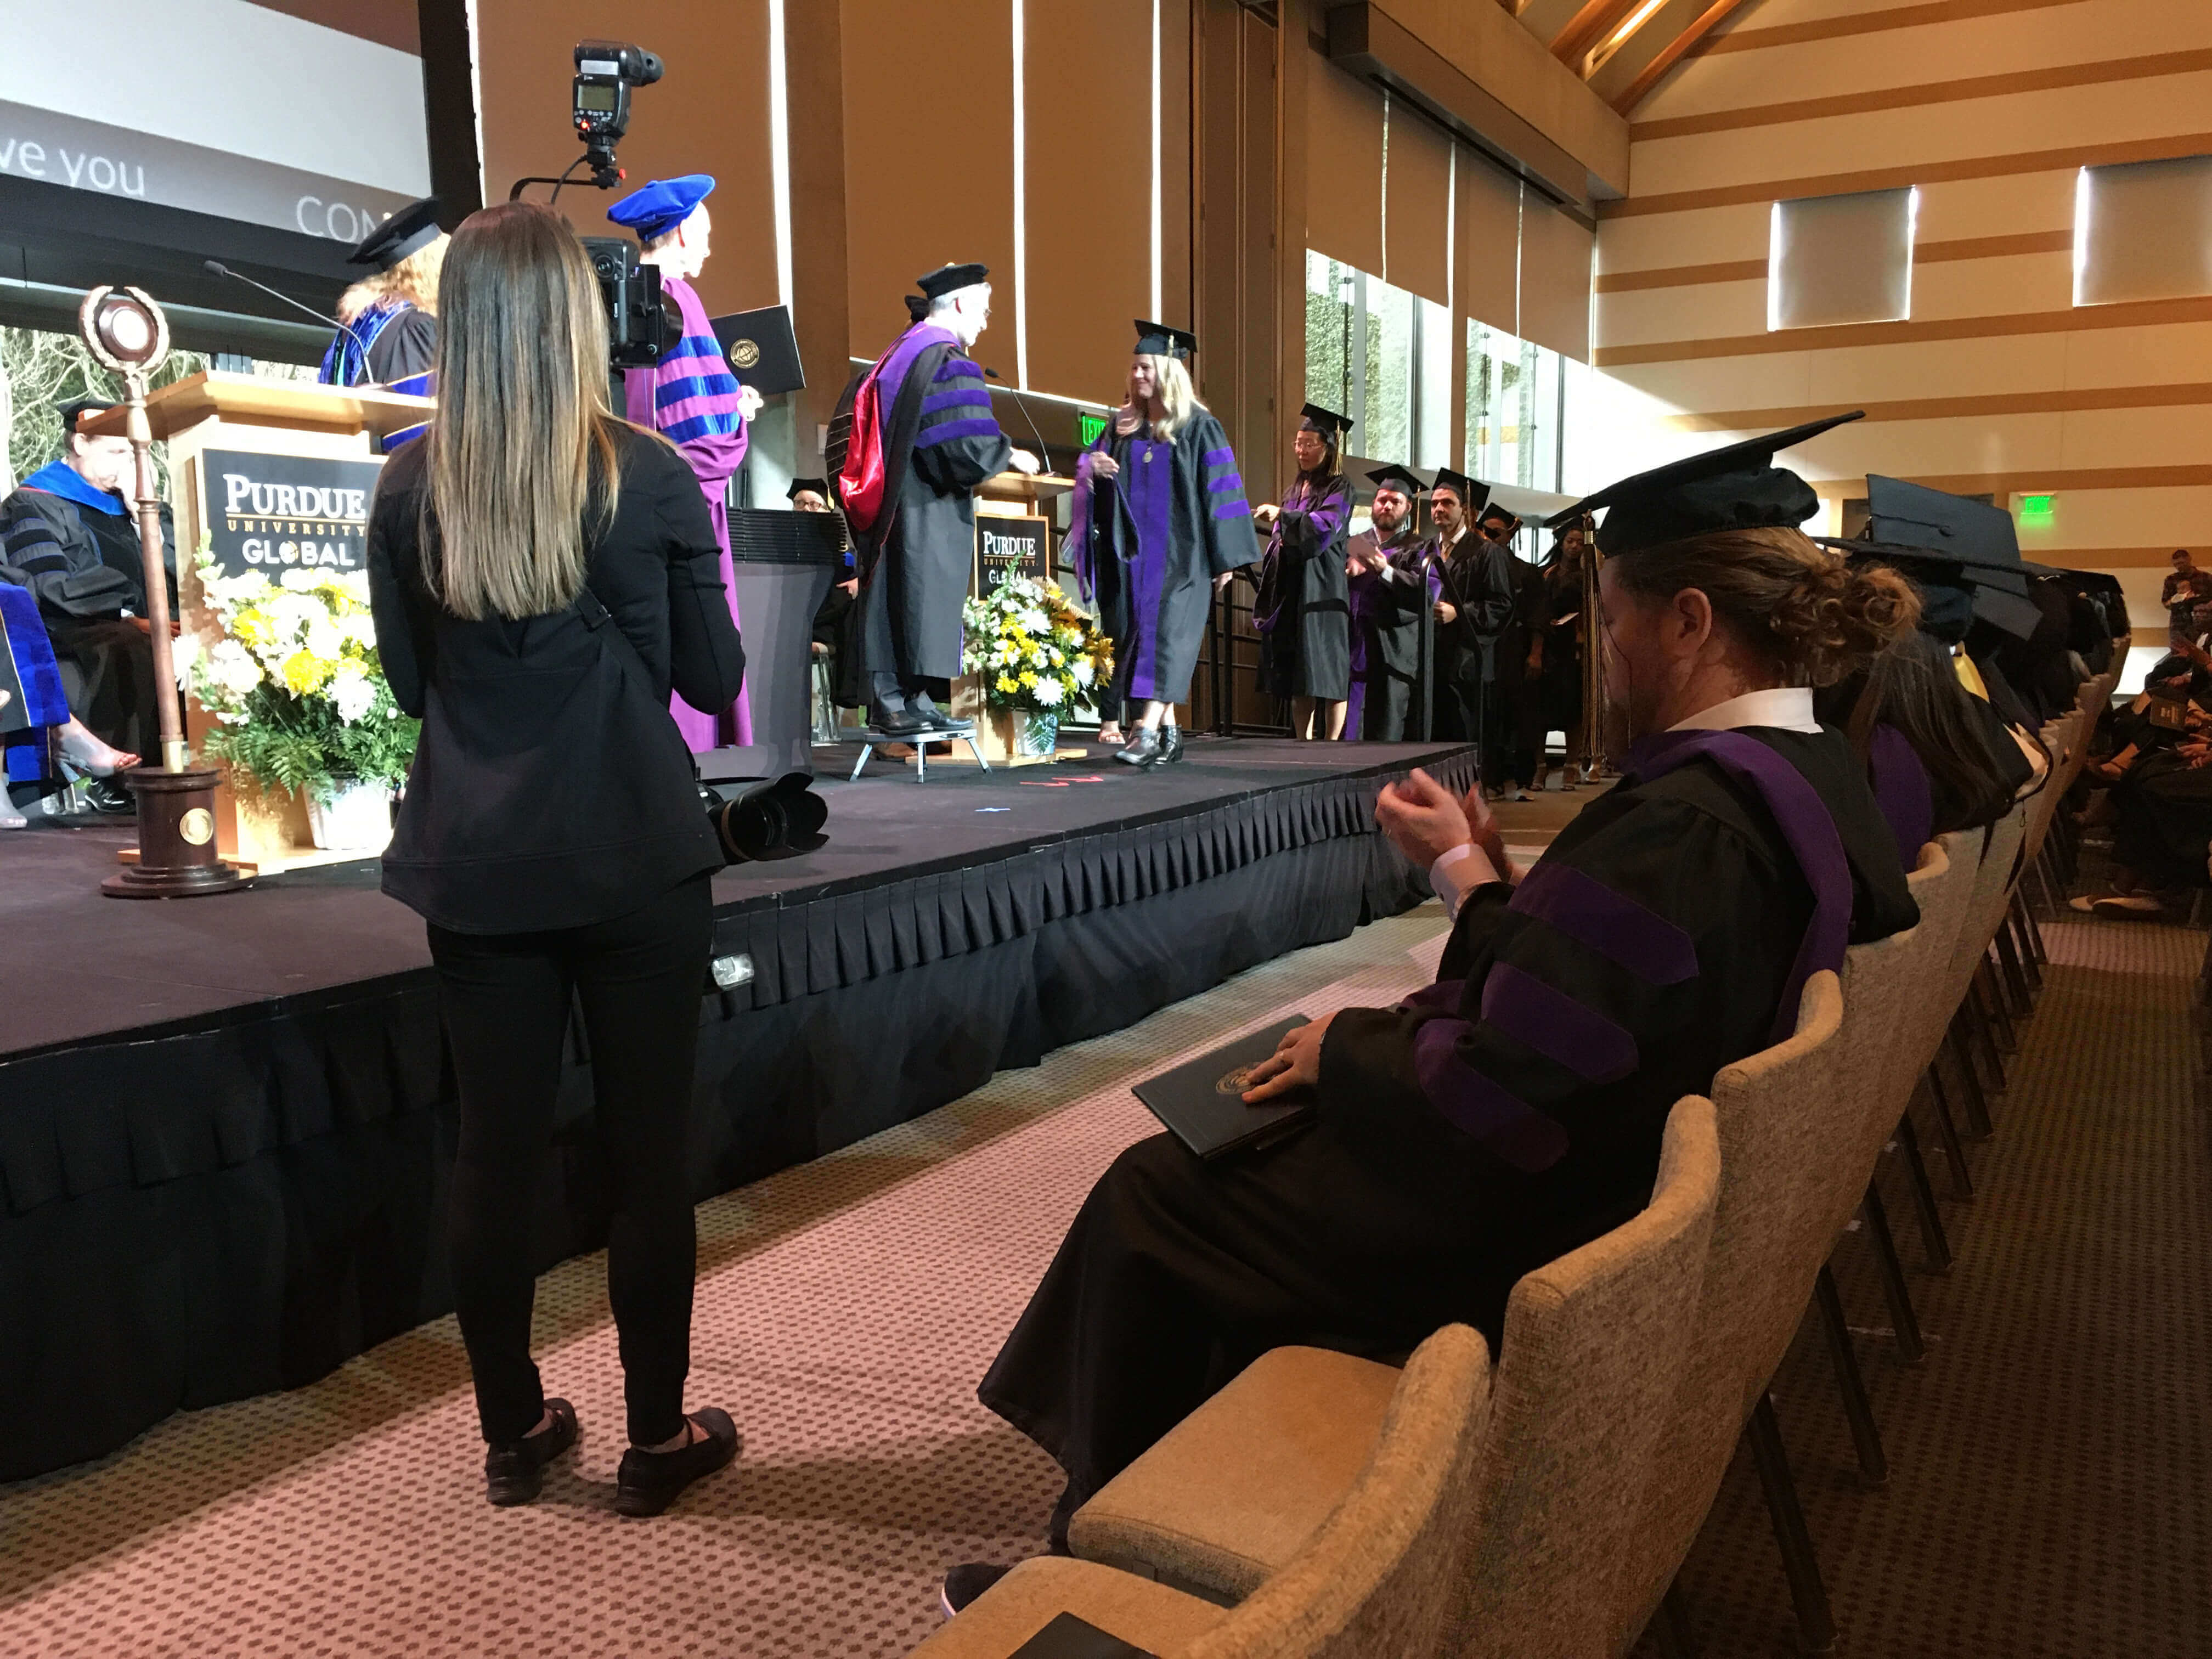 Purdue Global commencement recognizes more than 400 graduates Purdue